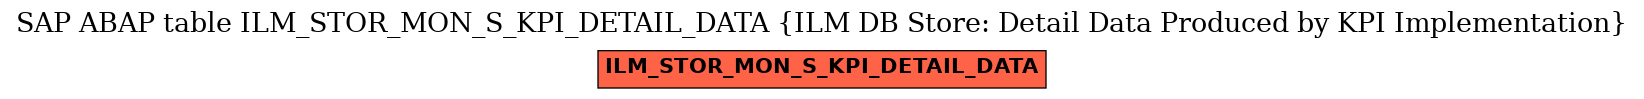 E-R Diagram for table ILM_STOR_MON_S_KPI_DETAIL_DATA (ILM DB Store: Detail Data Produced by KPI Implementation)